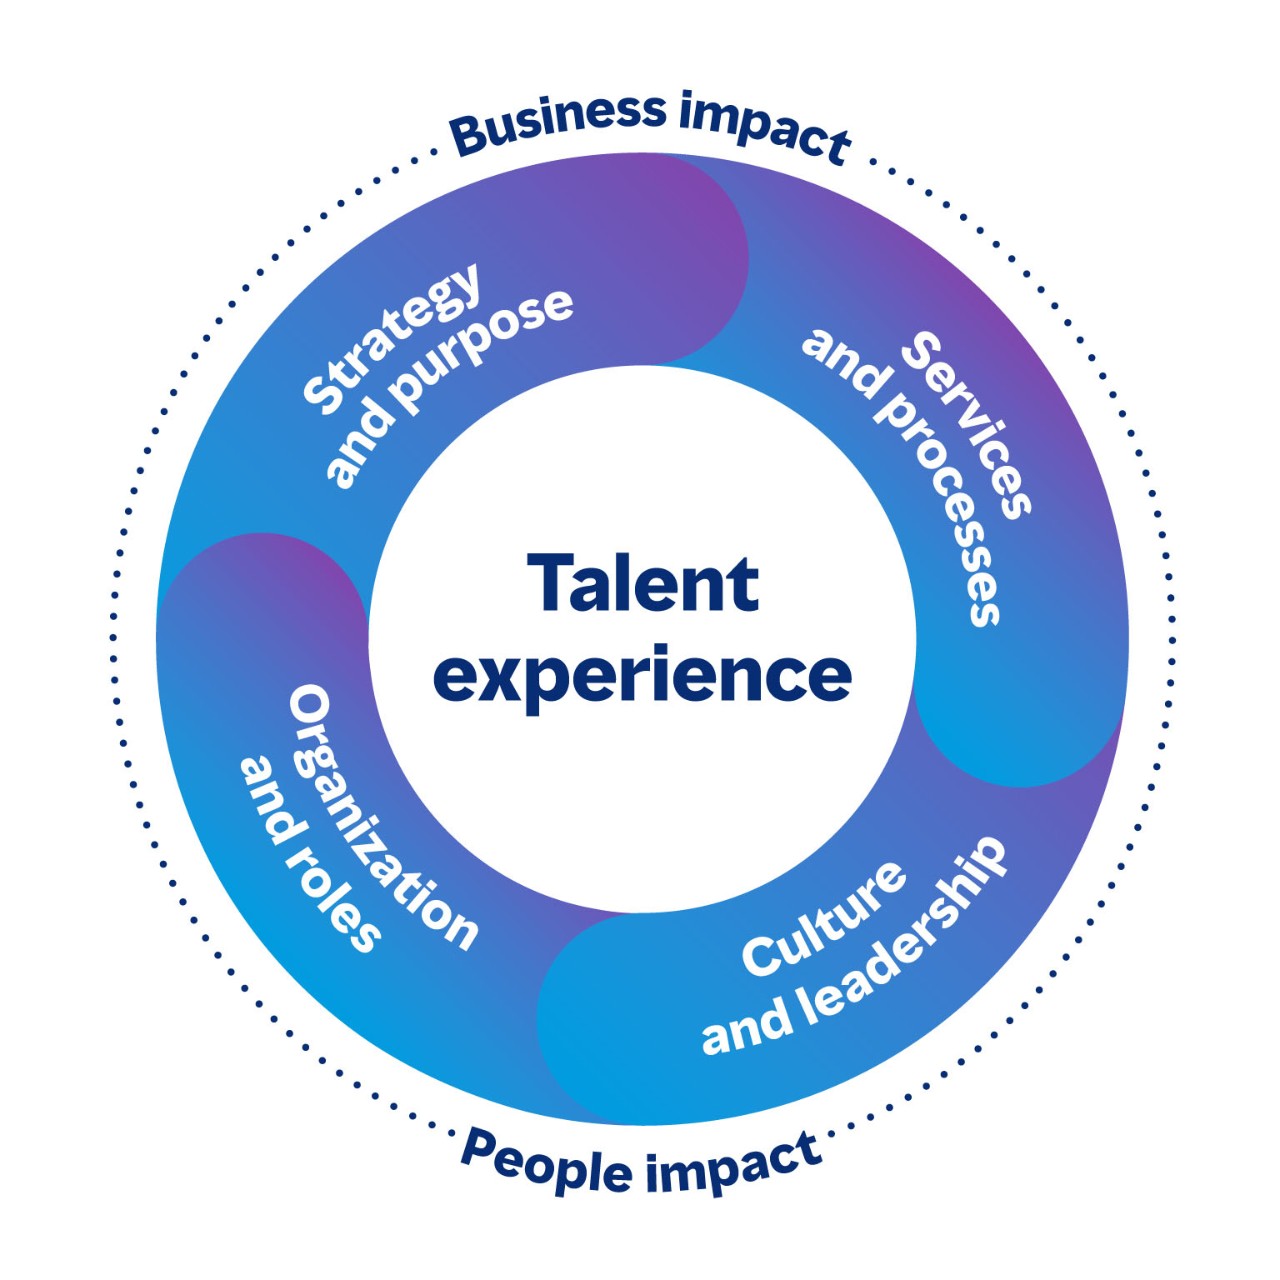 Yetenek deneyiminin hem iş hem de insan üzerinde etkisi olan bağlantılı alanlarını gösteren dairesel resim. Dört alan Strateji ve amaç, Hizmetler ve süreçler, Kültür ve liderlik, Kuruluş ve rollerdir.